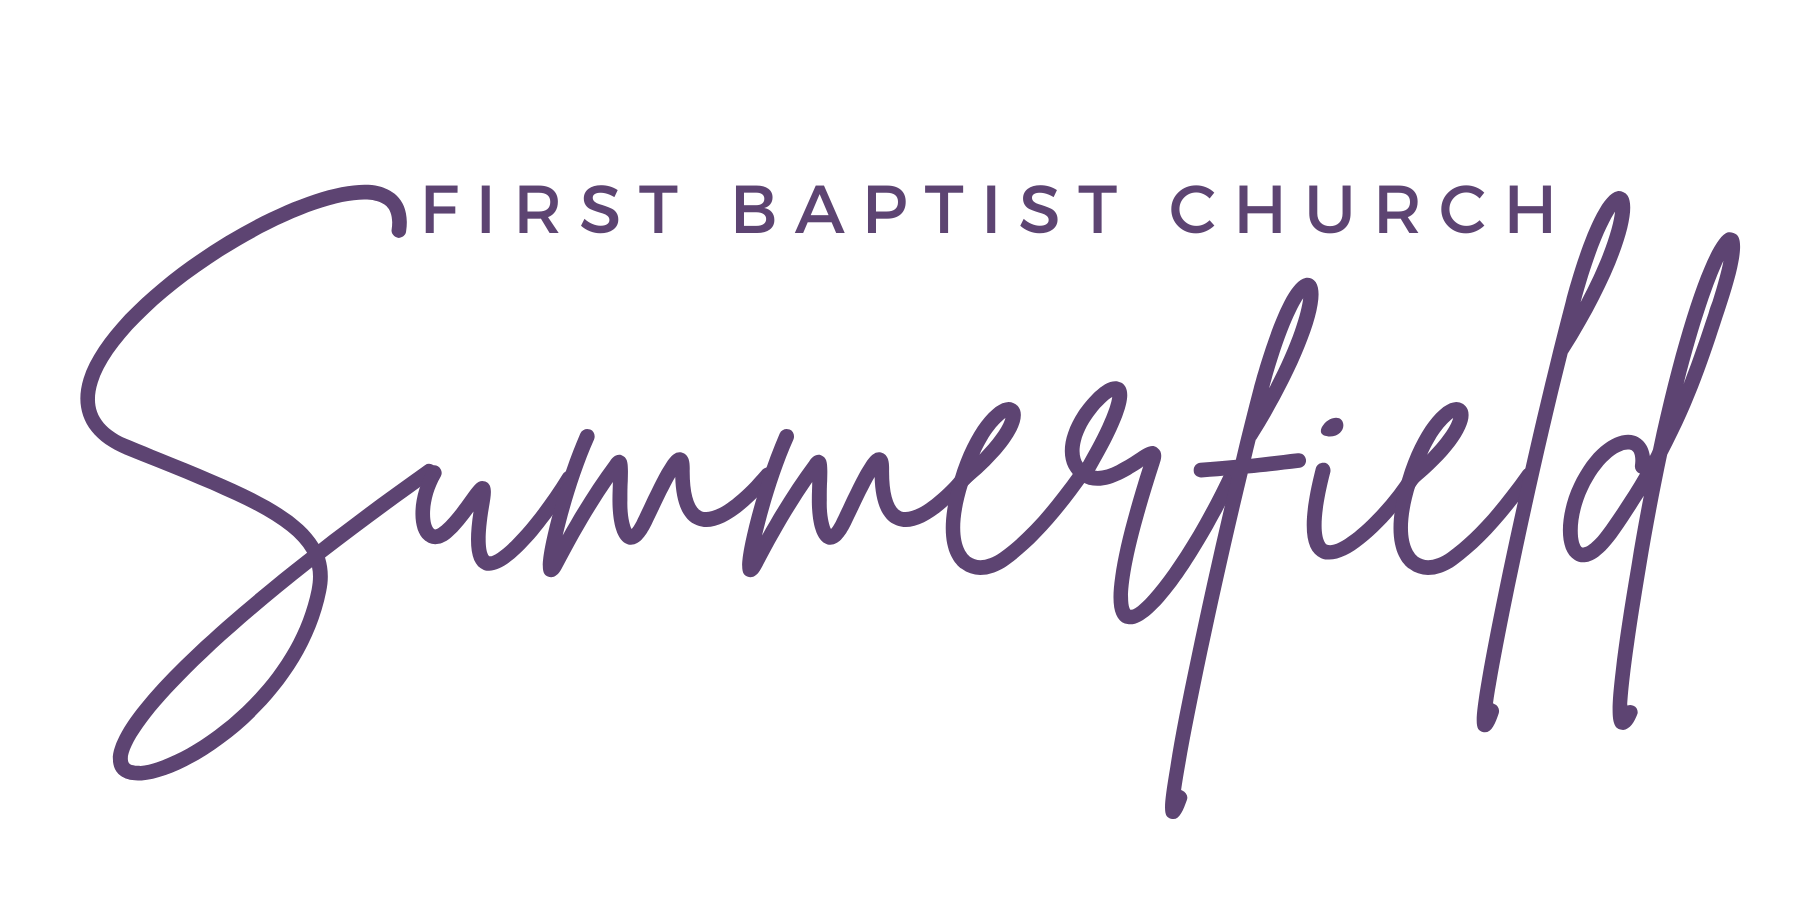 First Baptist Church of Summerfield